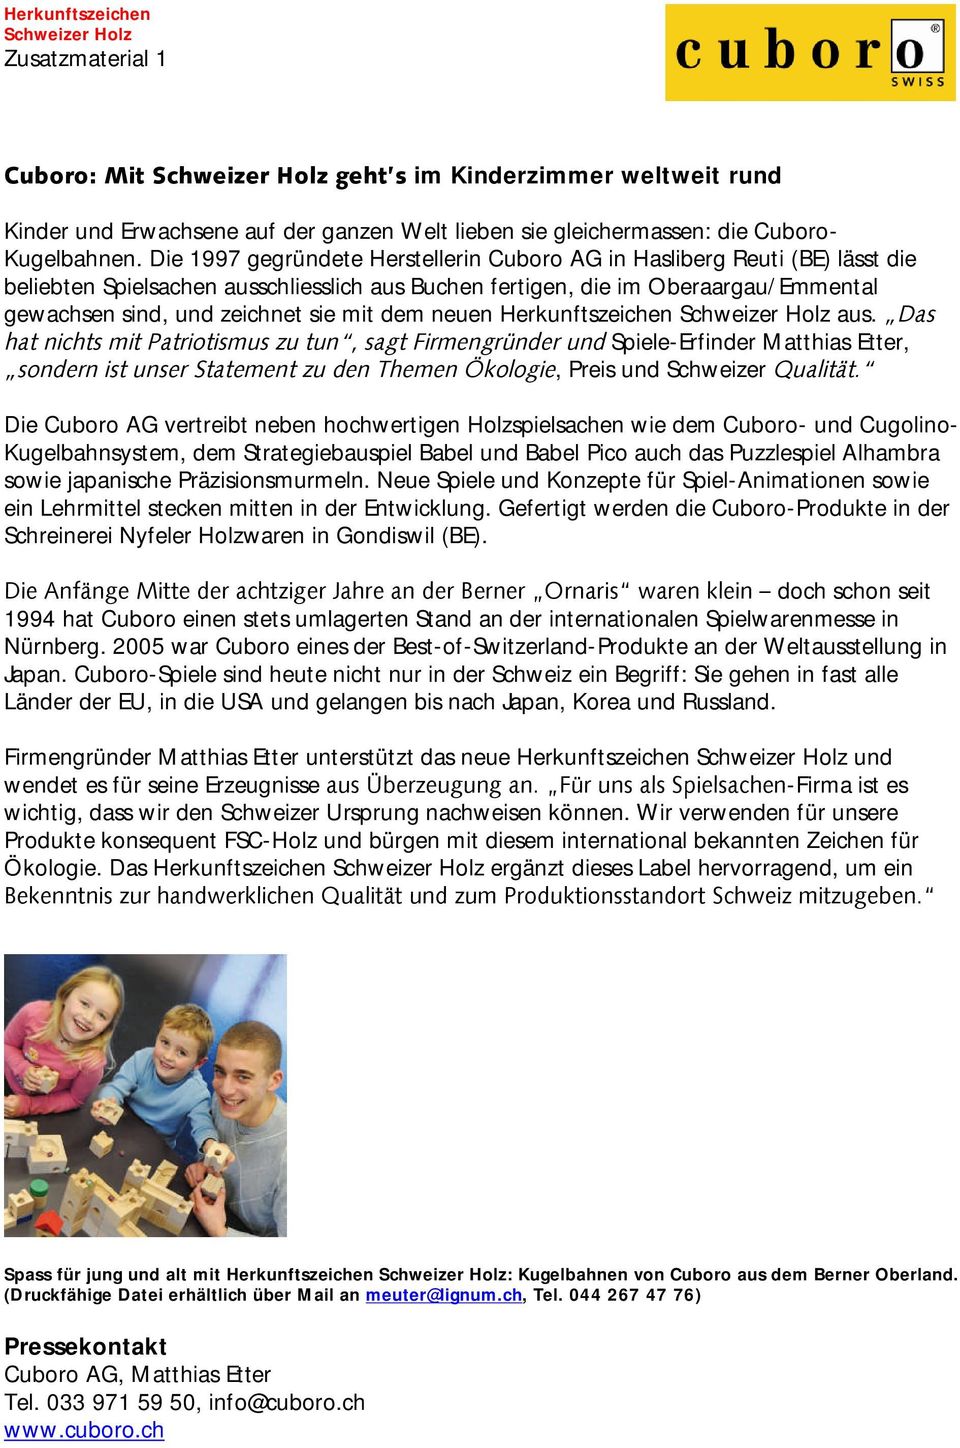 Die 1997 gegründete Herstellerin Cuboro AG in Hasliberg Reuti (BE) lässt die beliebten Spielsachen ausschliesslich aus Buchen fertigen, die im Oberaargau/Emmental gewachsen sind, und zeichnet sie mit